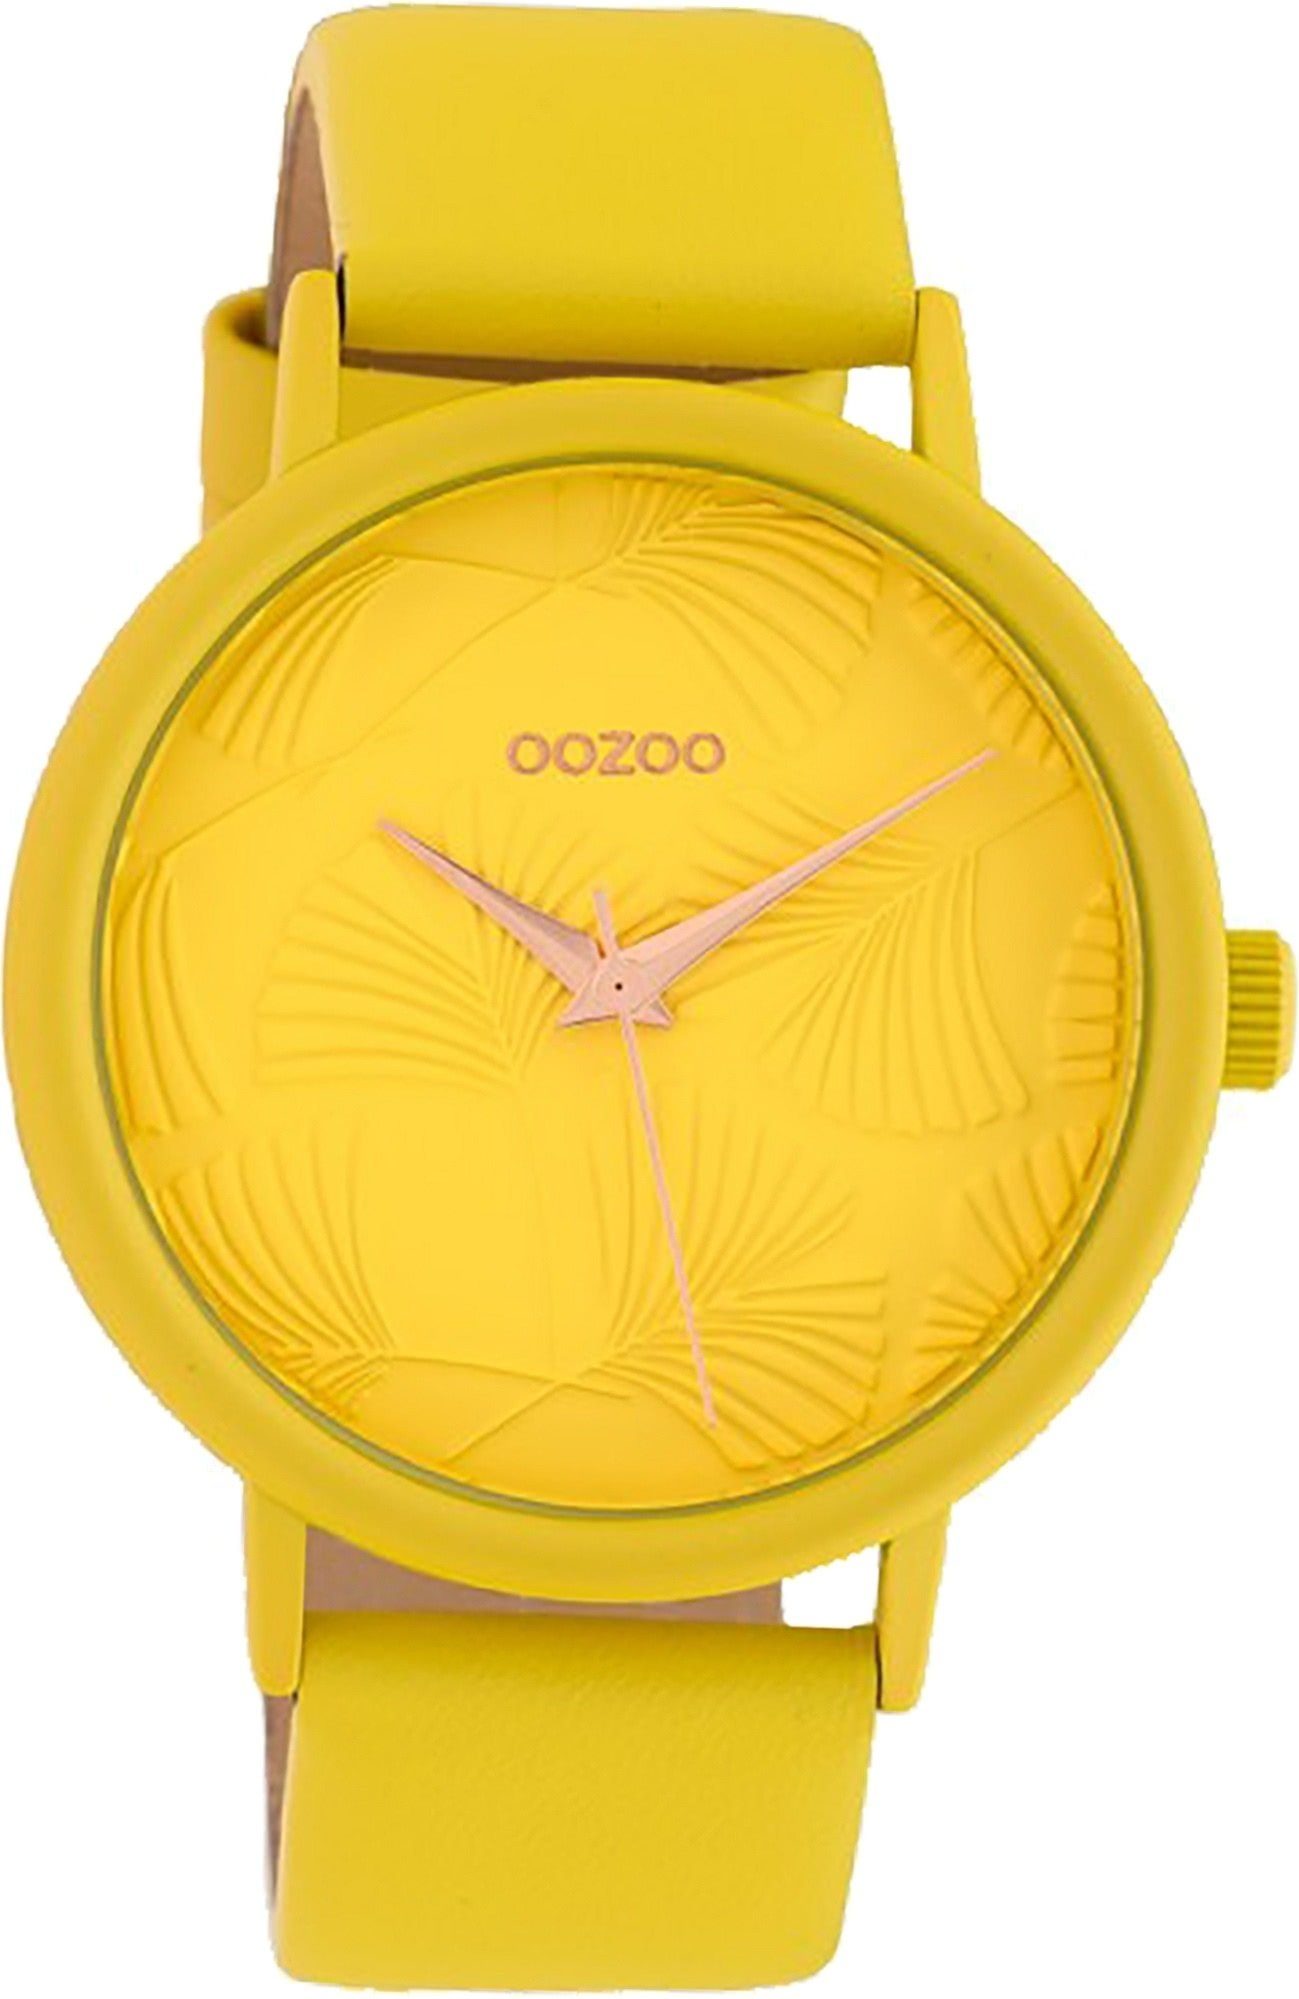 OOZOO Quarzuhr Oozoo Leder Damen Uhr C10395 Analog, Damenuhr Lederarmband gelb, rundes Gehäuse, groß (ca. 42mm)